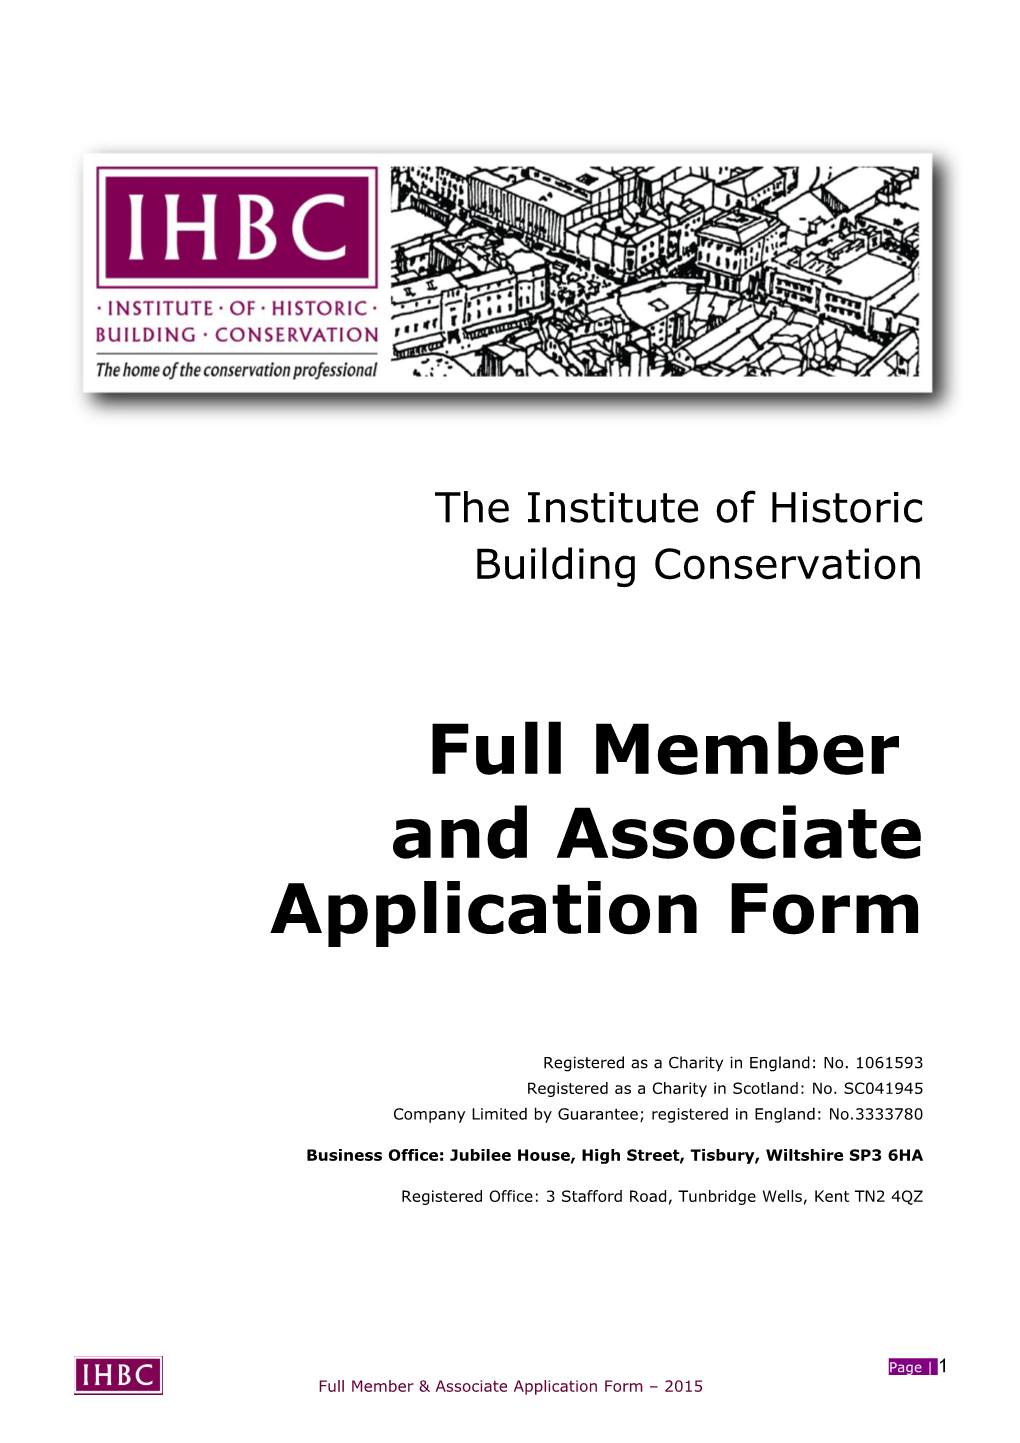 IHBC Full Membership & Associate